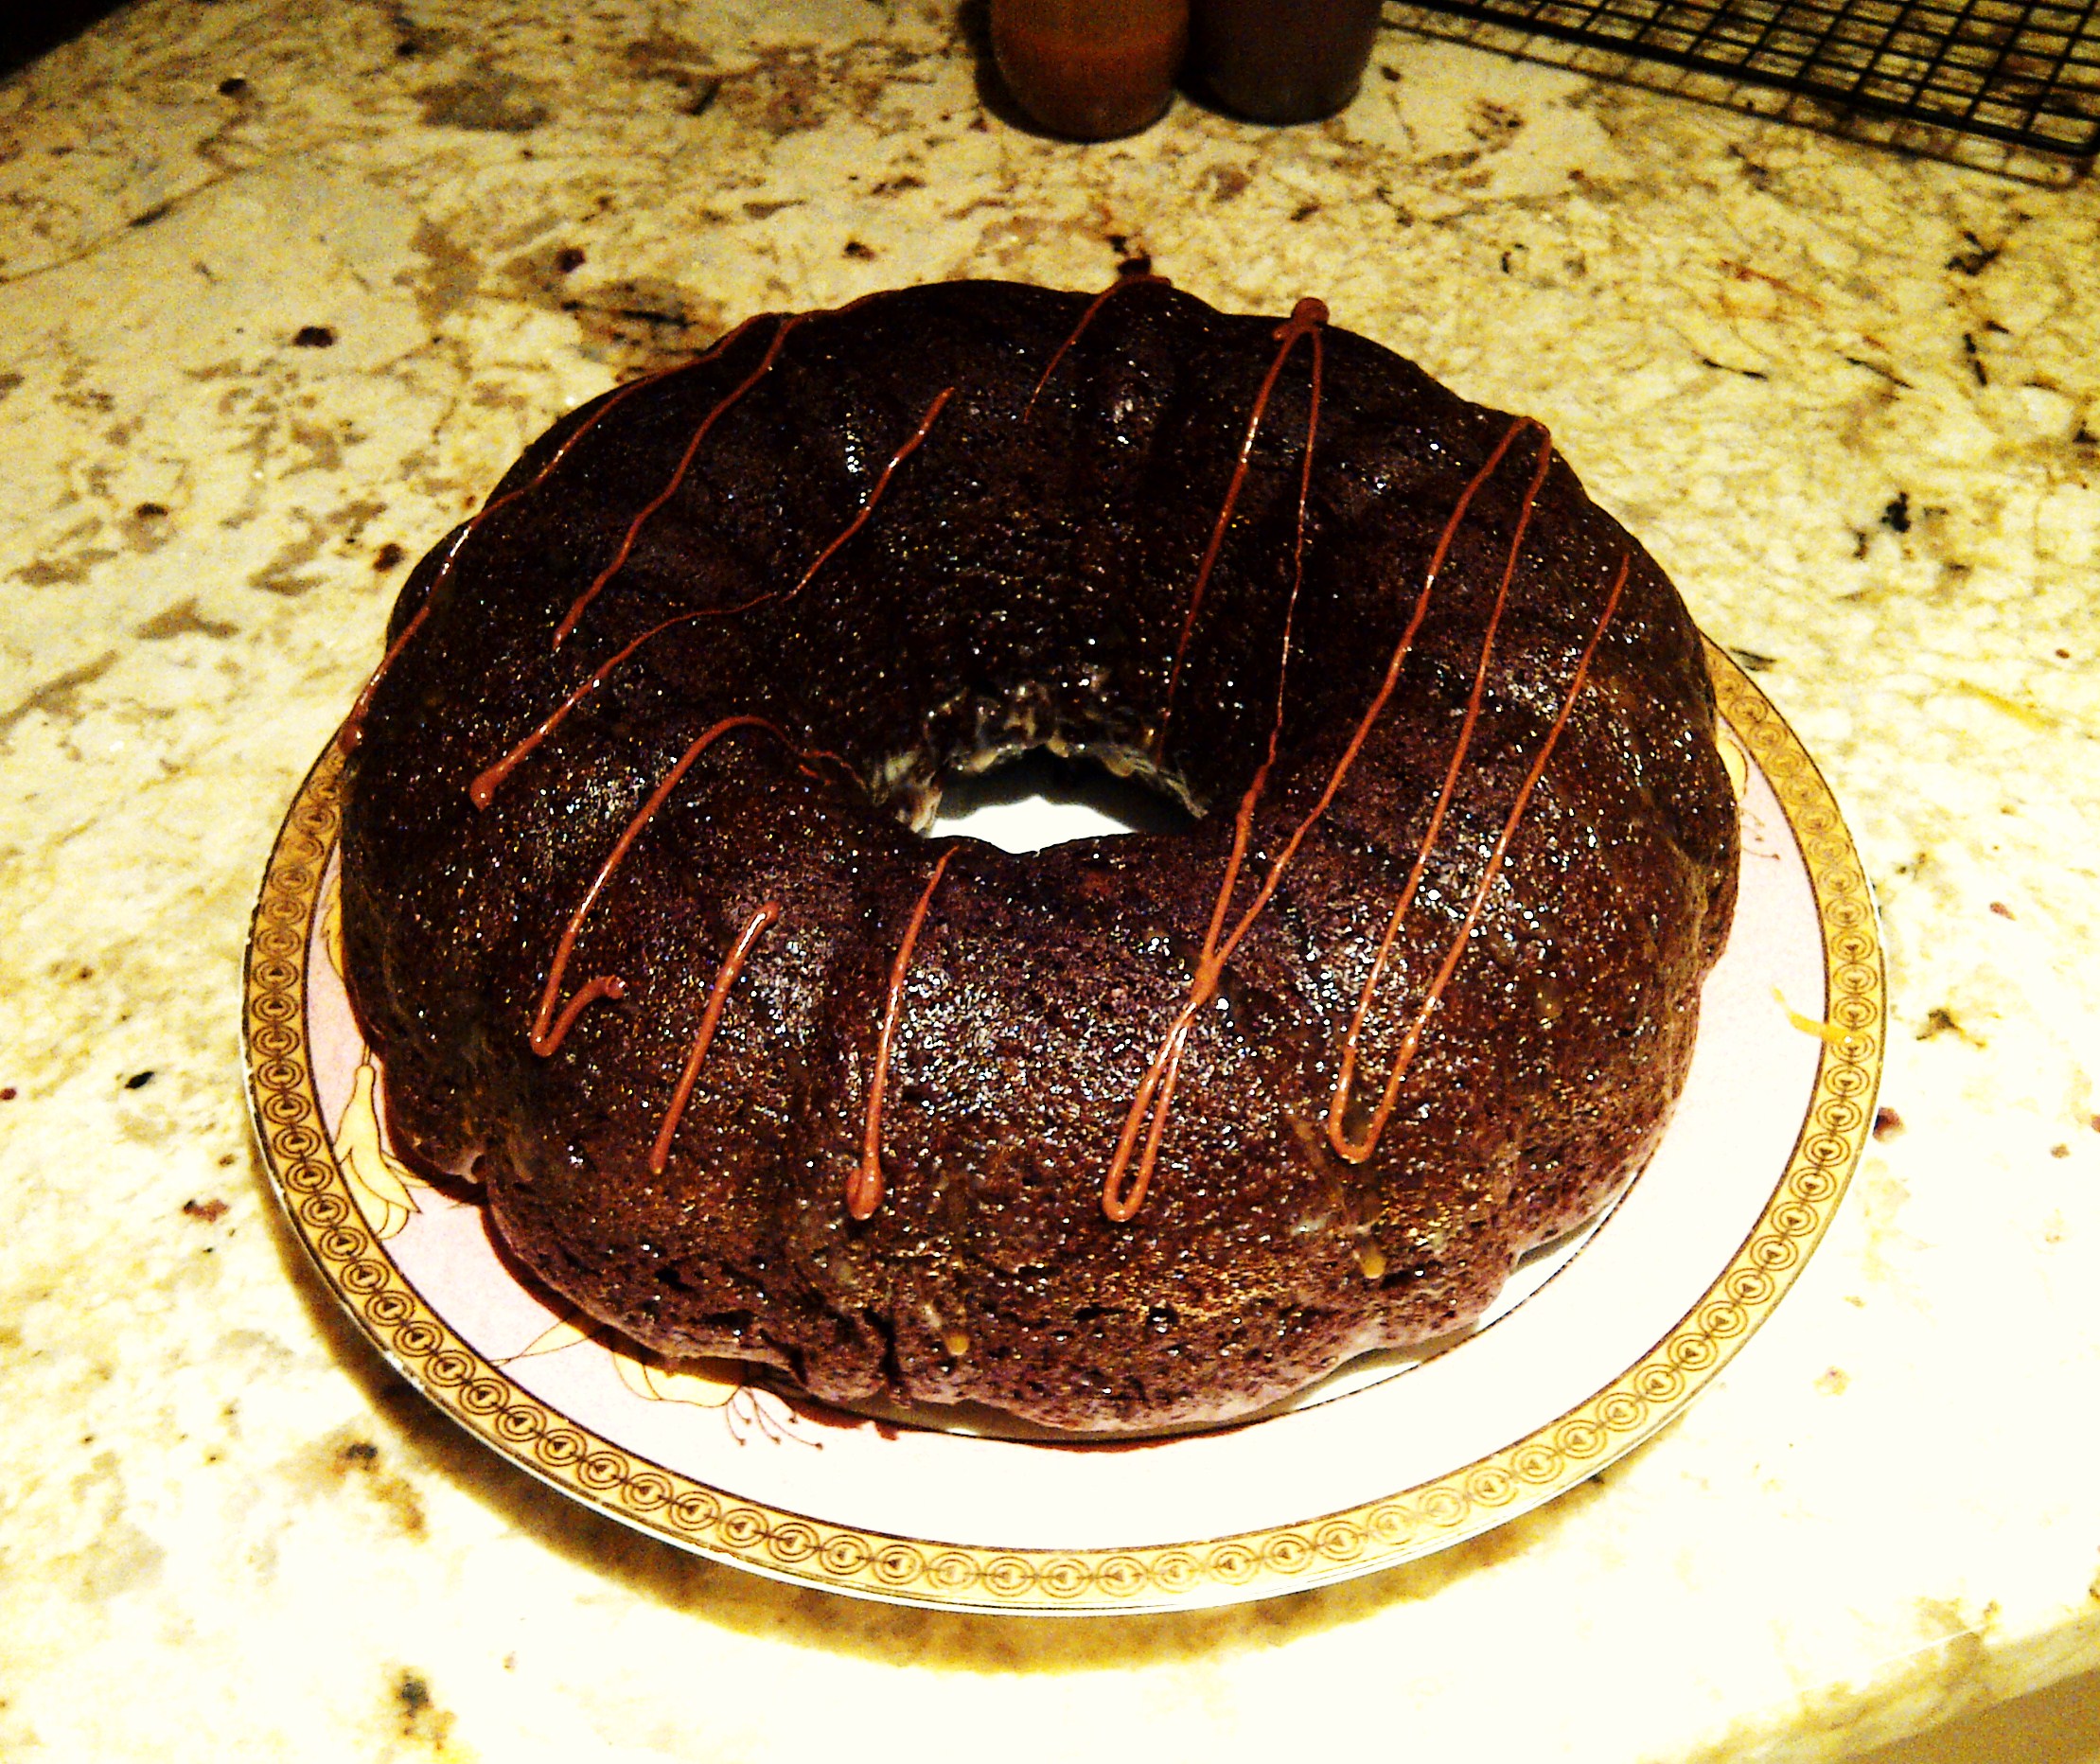 12 Photos of Chocolate Caramel Bundt Cakes